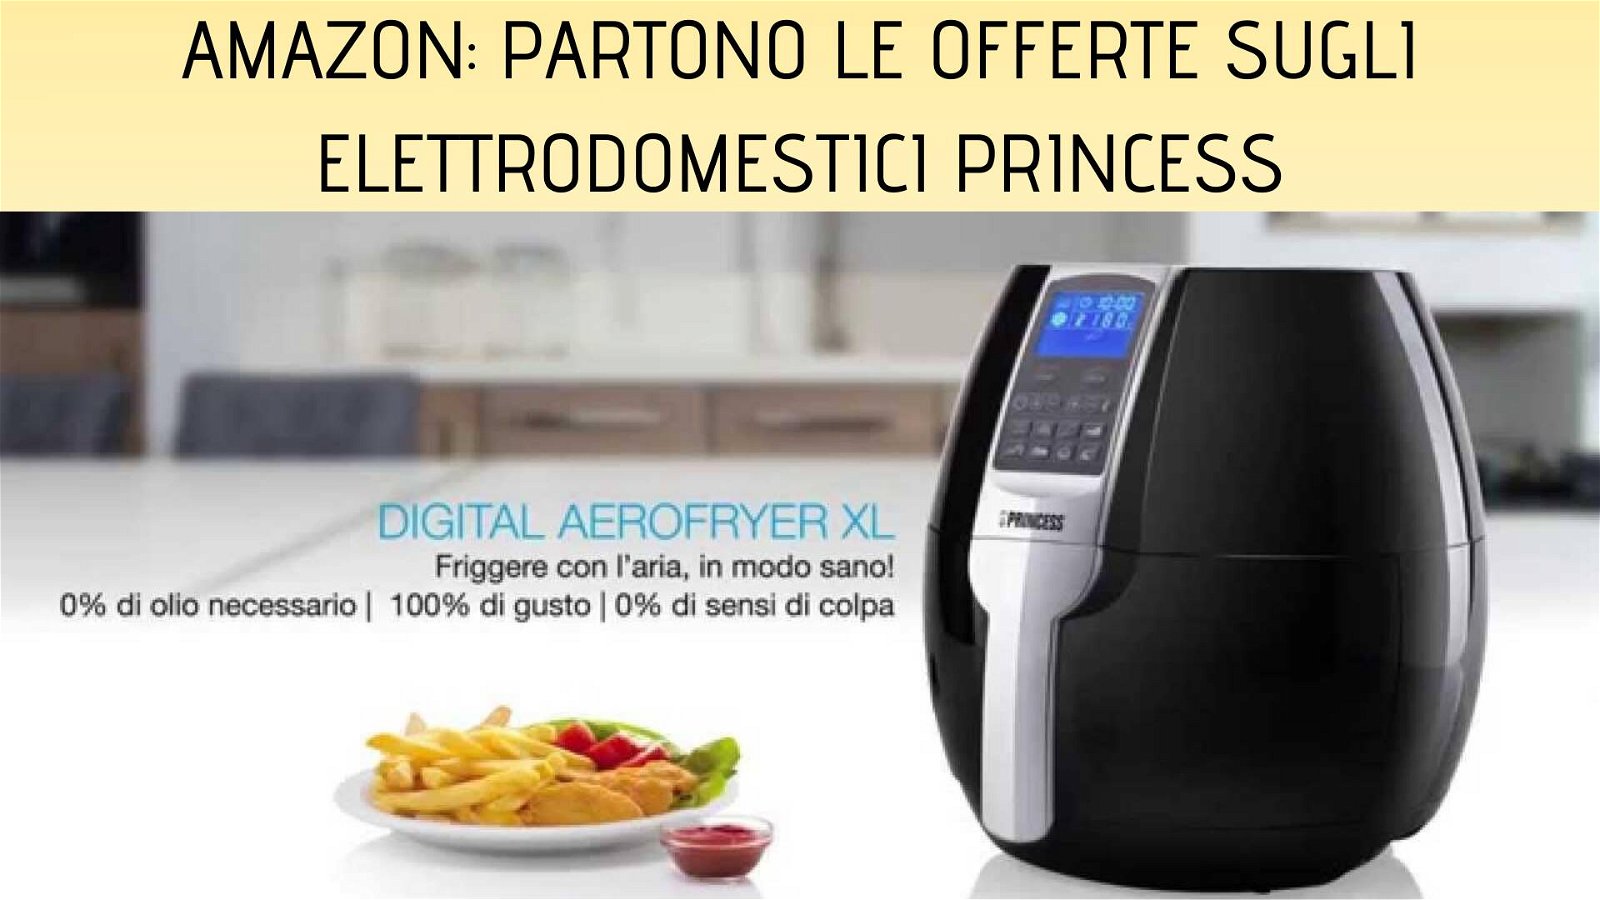 Immagine di Amazon: imperdibili offerte sugli elettrodomestici Princess